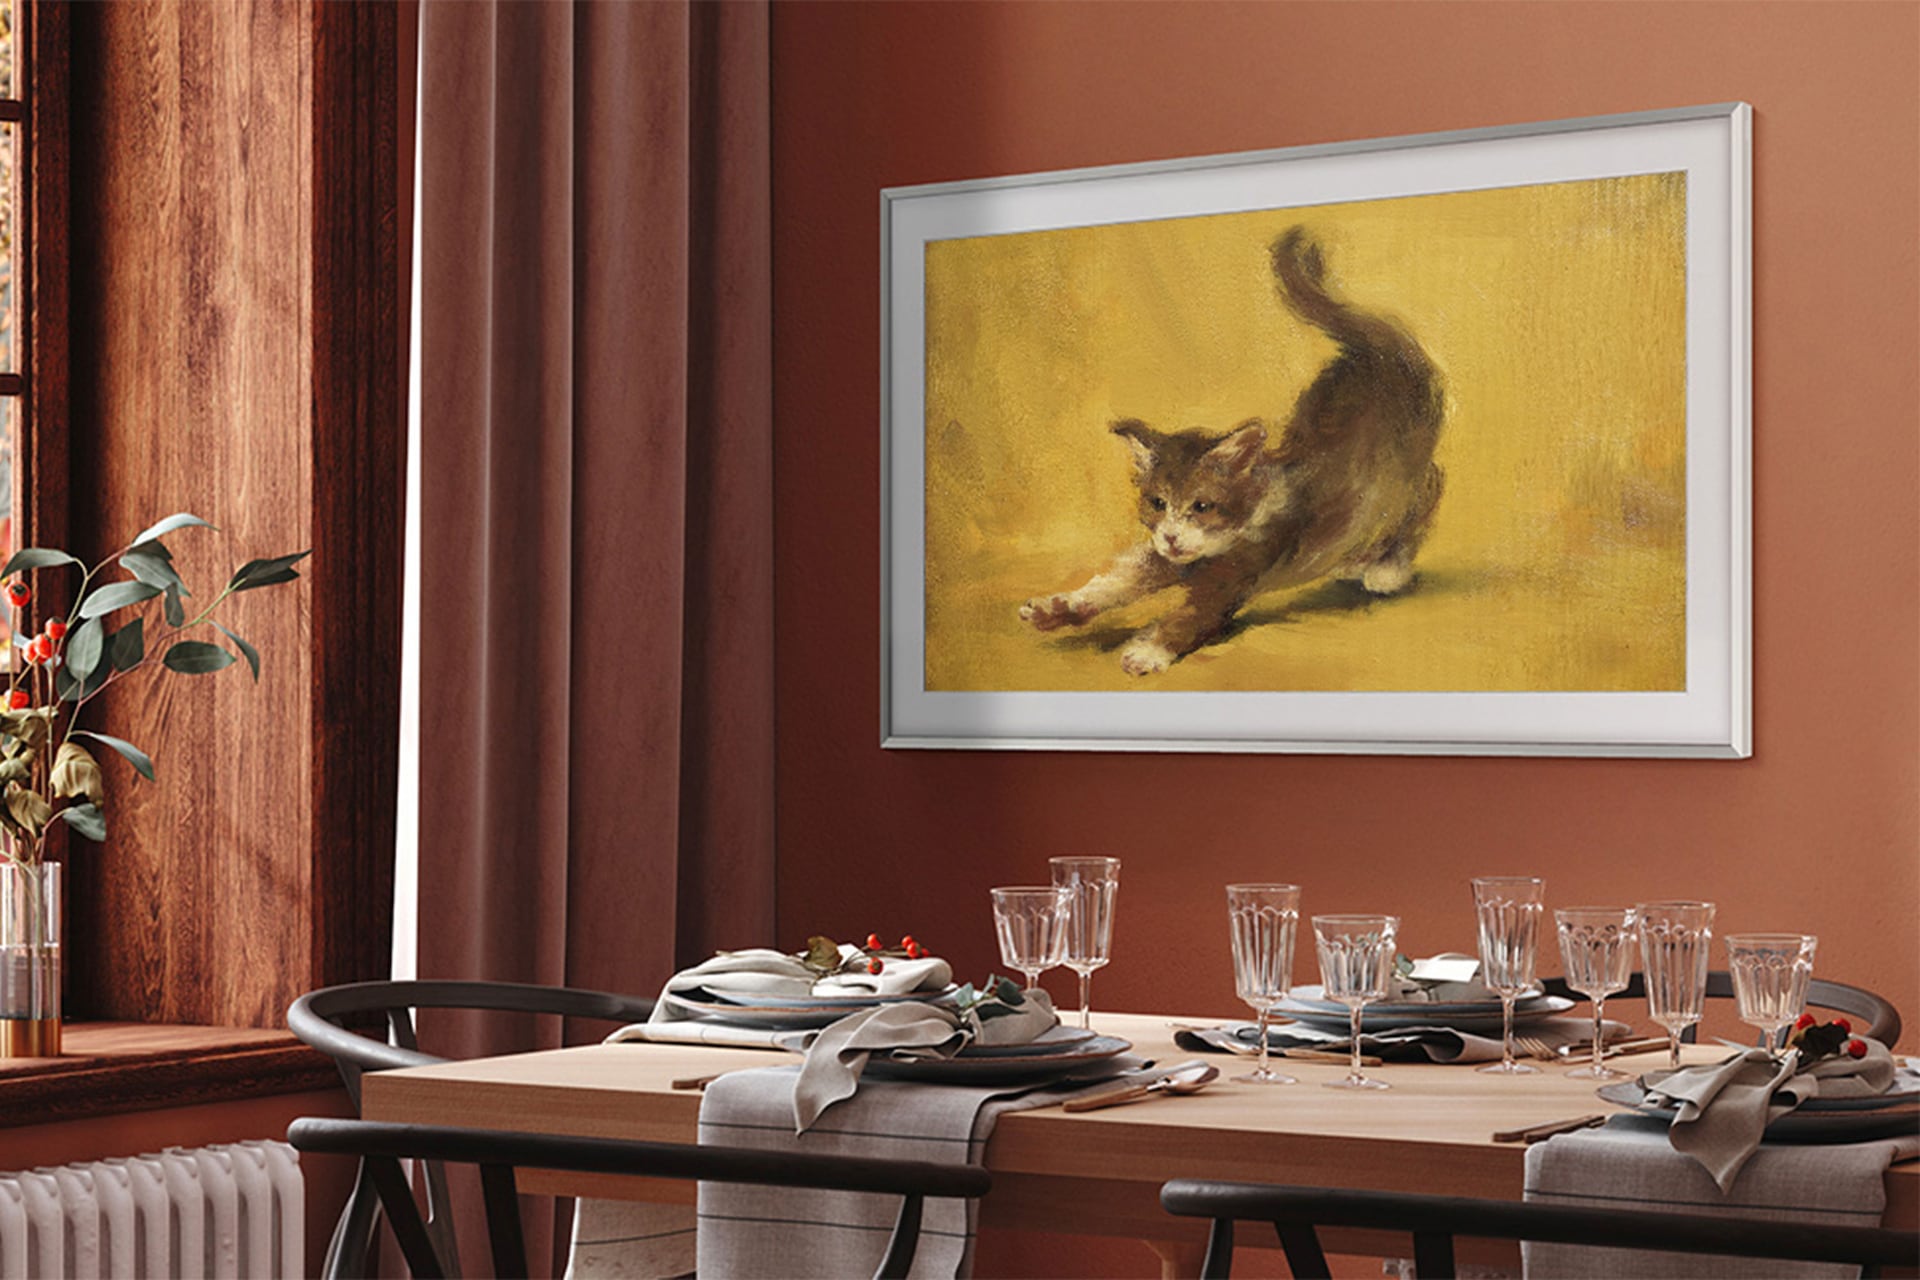 TV 앞 탁자 위에 많은 그릇과 컵이 있고 스크린 안에는 고양이 그림을 보입니다.